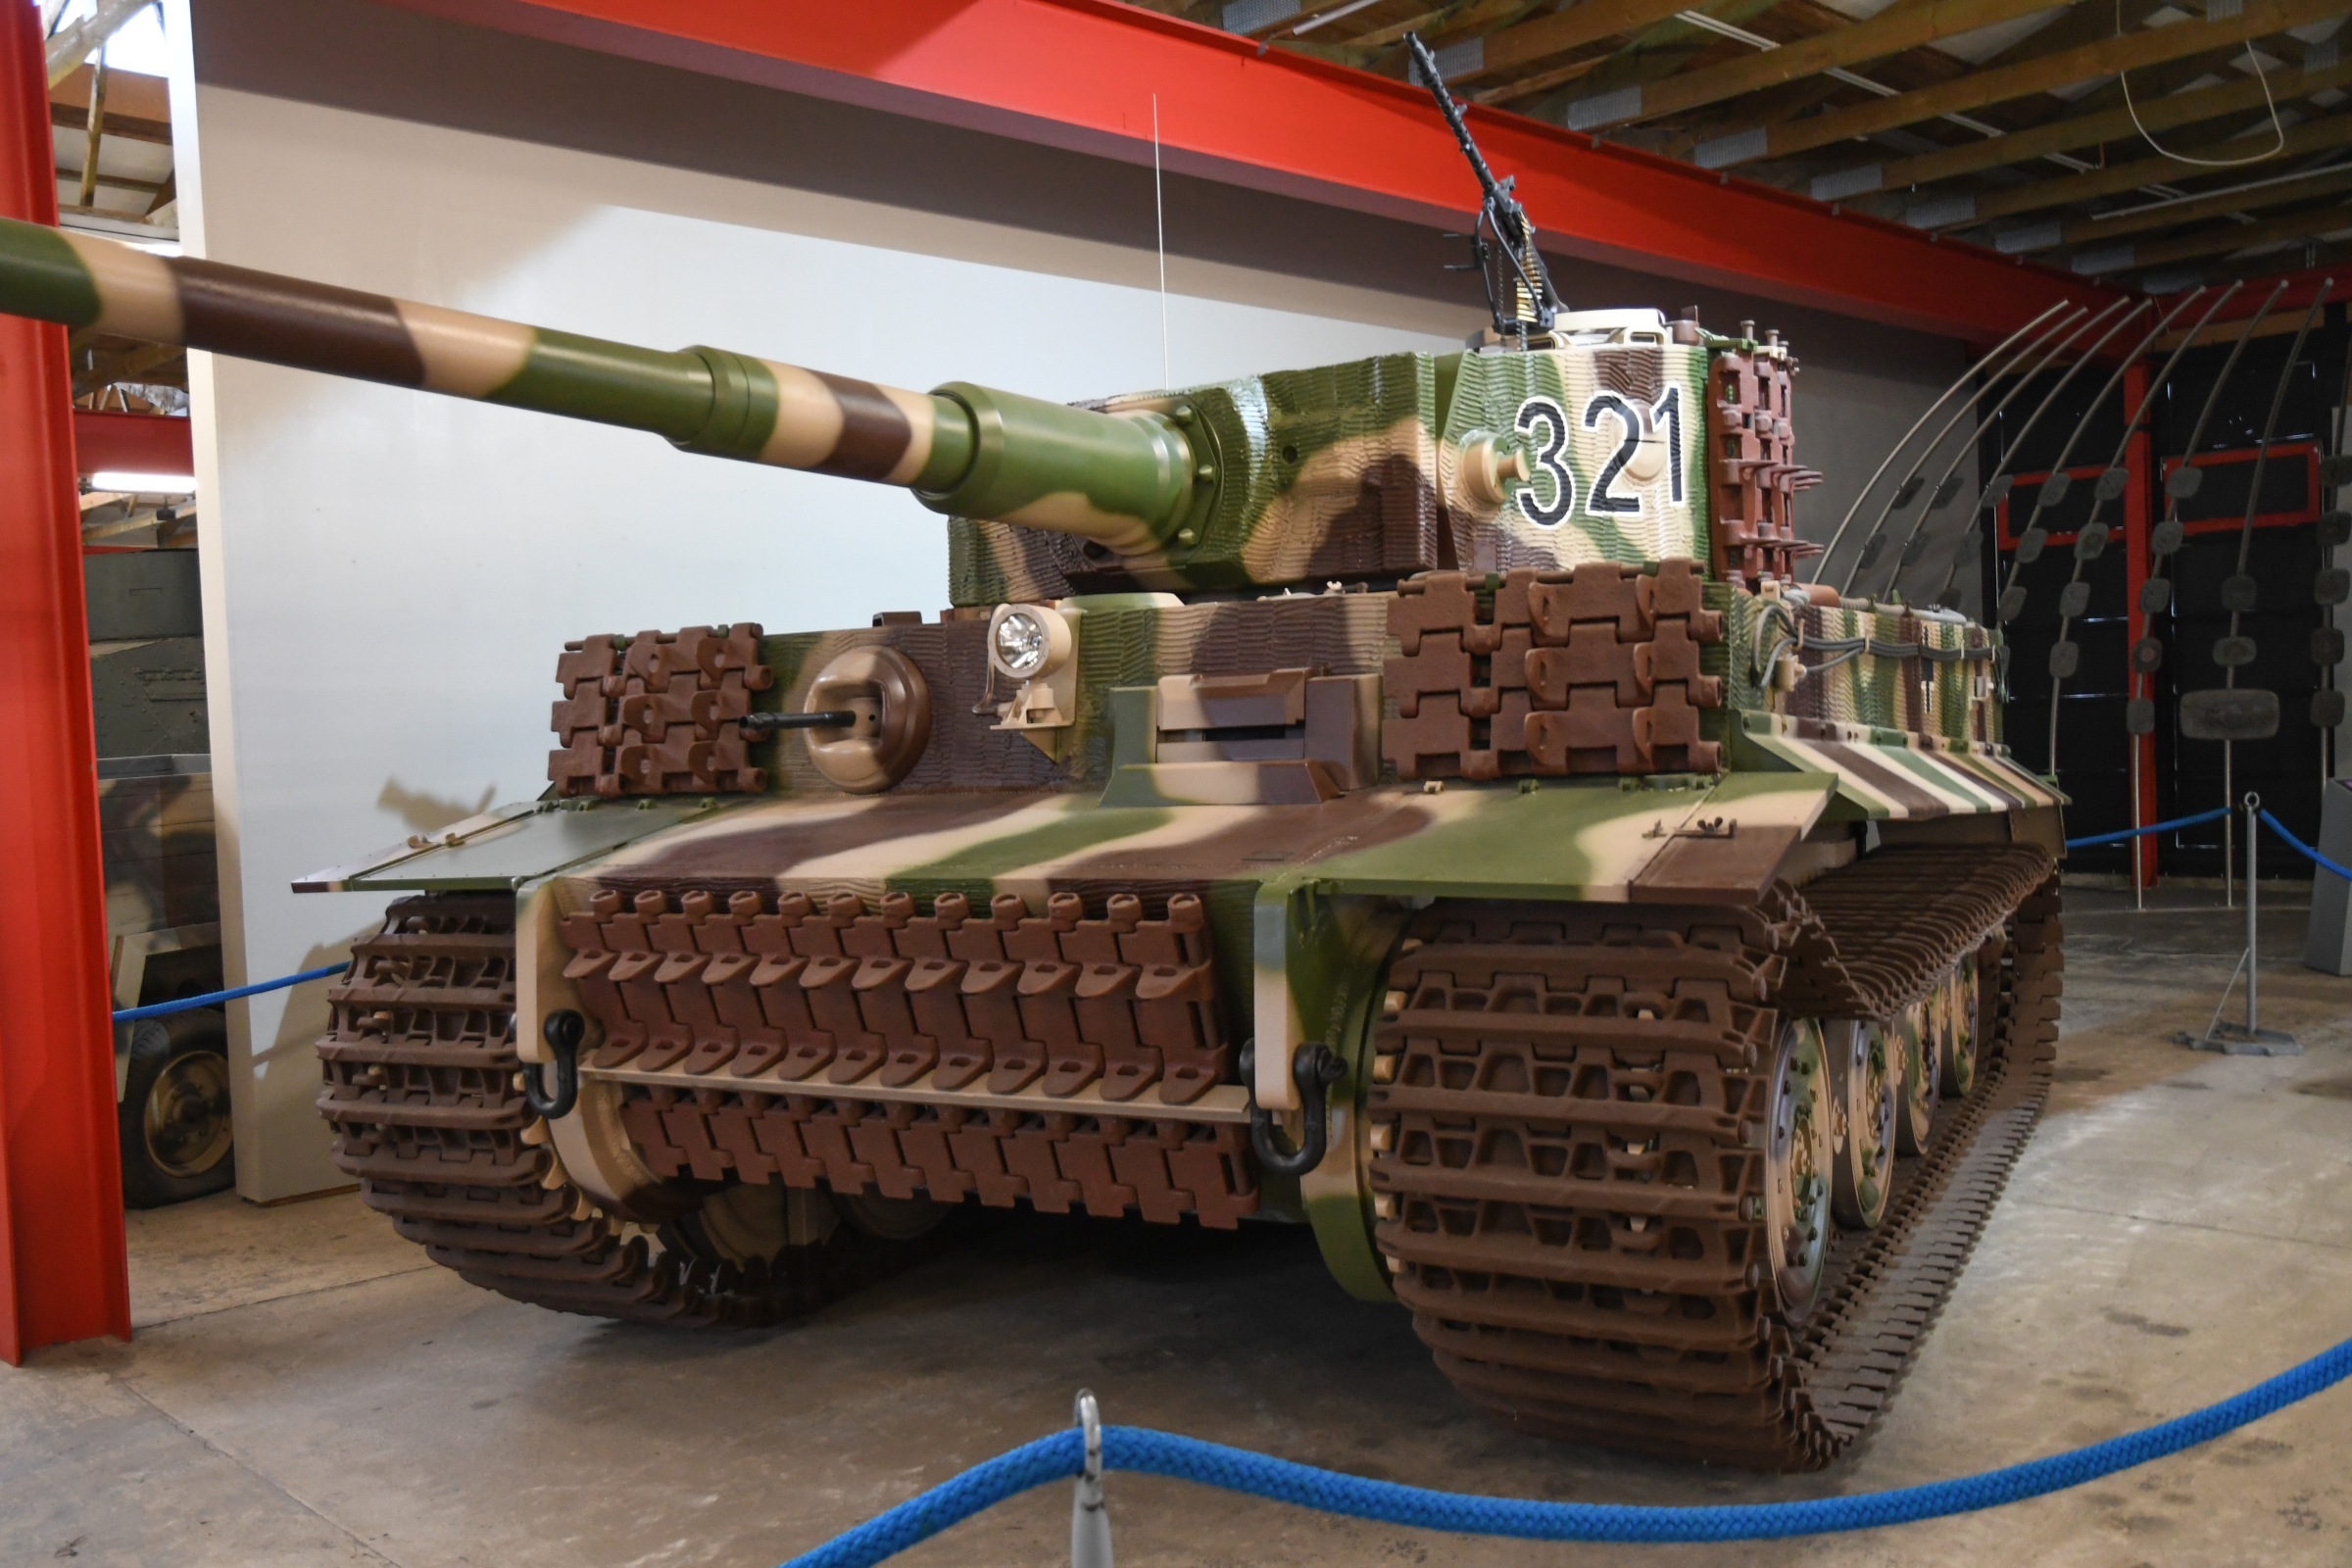 Panzerkampfwagen VI  Ausf. E  Tiger (Sd.Kfz. 181)   (replica)